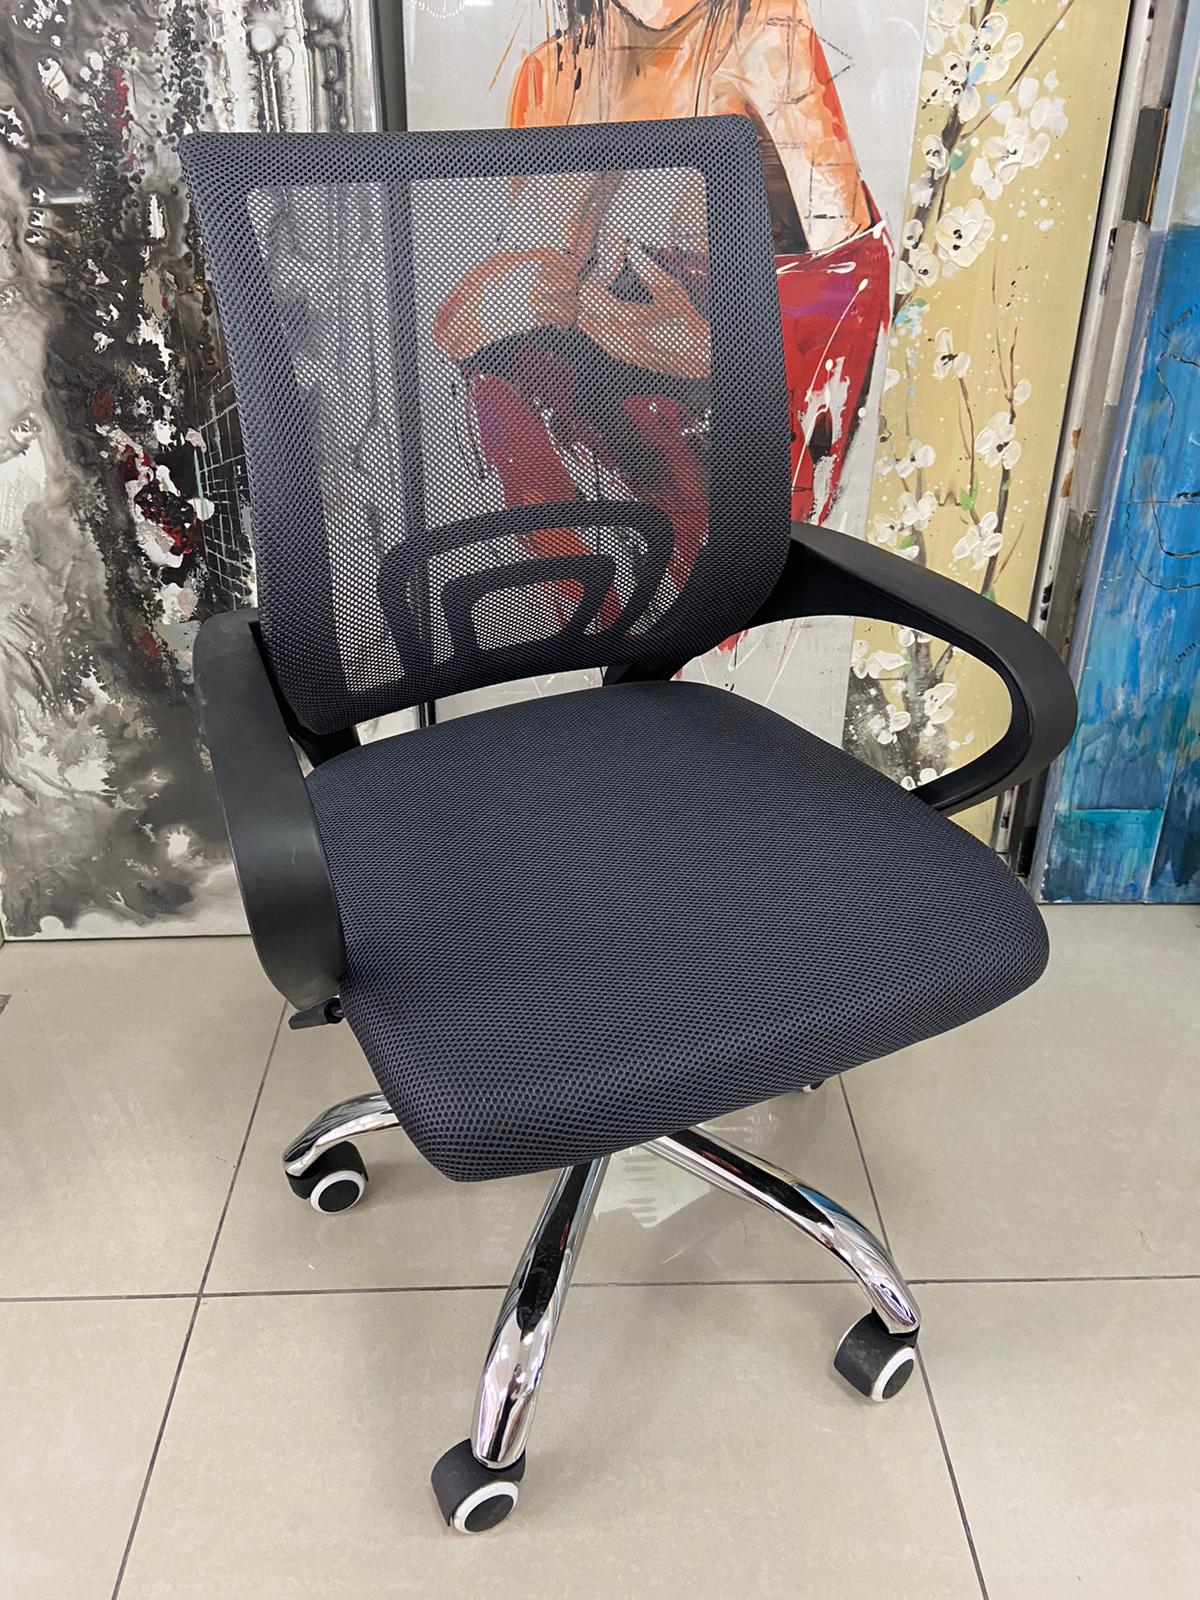 Desk chair no headrest